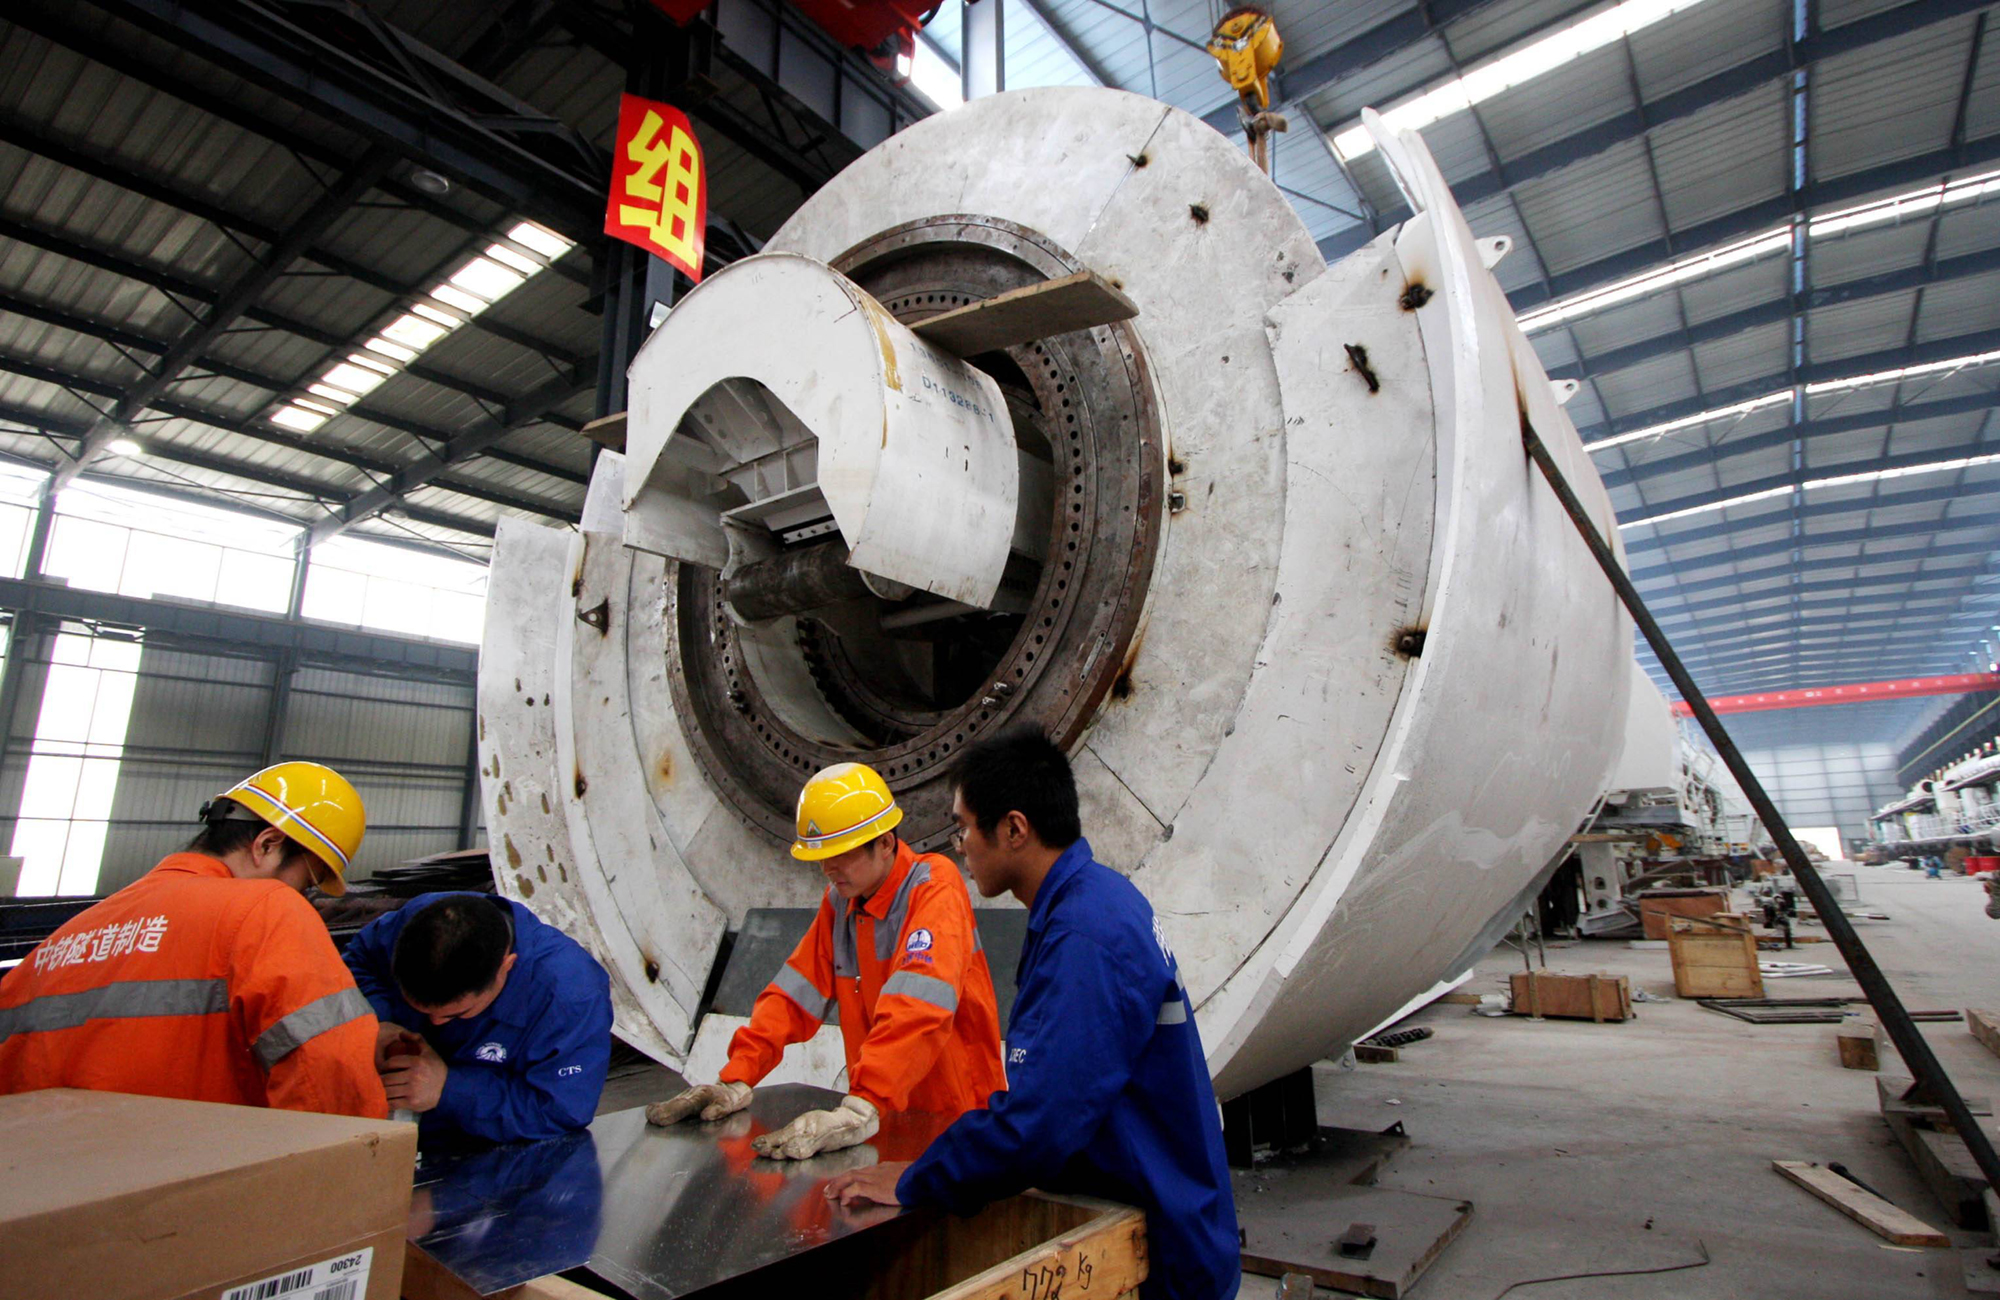 Techniker bei der Montage einer Tunnelbohrmaschine. Deutsche Maschinen- und Anlagenbauer stoßen in China verstärkt auf lokale Wettbewerber, die sich insbesondere über eine aggressive Preispolitik Aufträge sichern können. Foto: Imago-Bilder / Xinhua (Chen Shichuan)